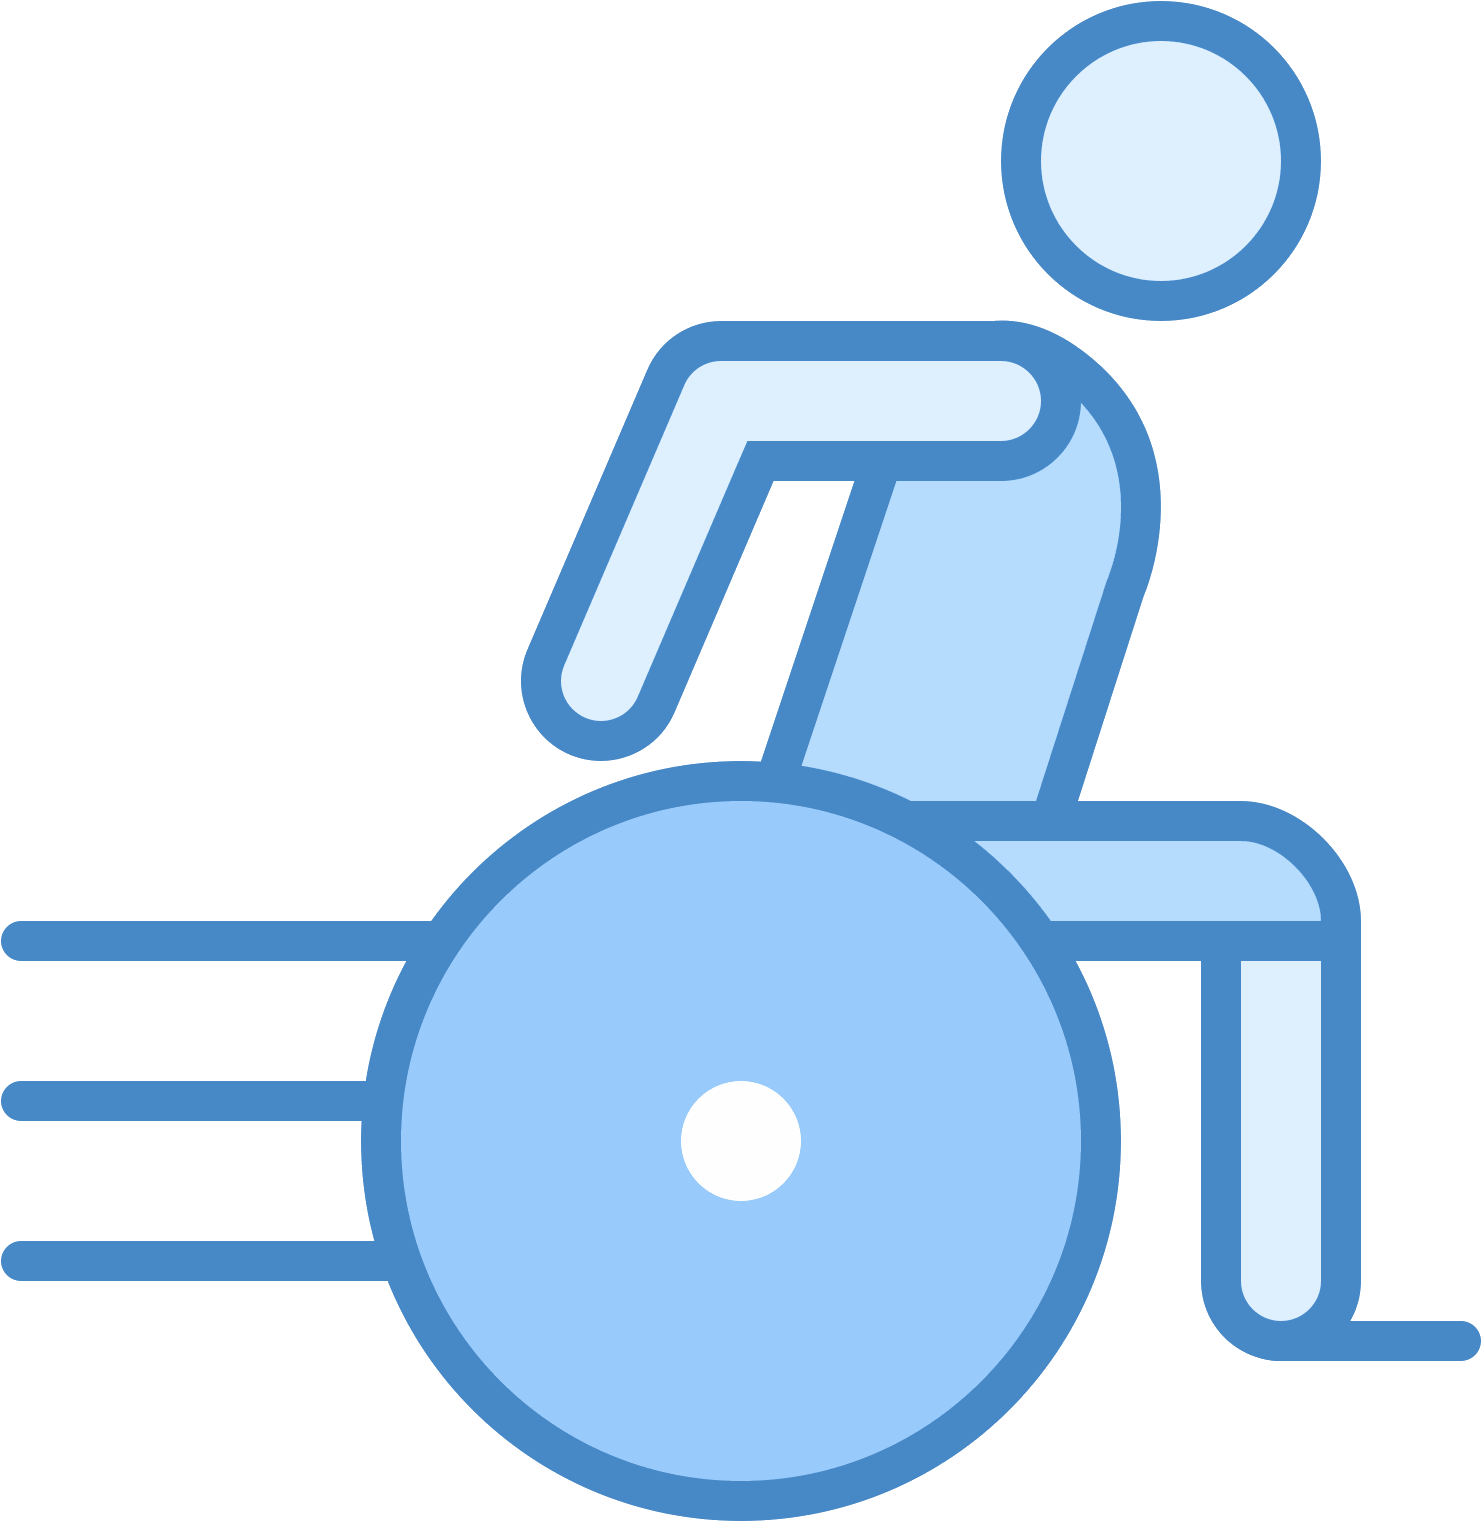 Знак инвалидной коляски. Инвалидная коляска 80x80 ICO. Инвалид иконка. Инвалидная коляска пиктограмма. Инвалидная коляска иконка.